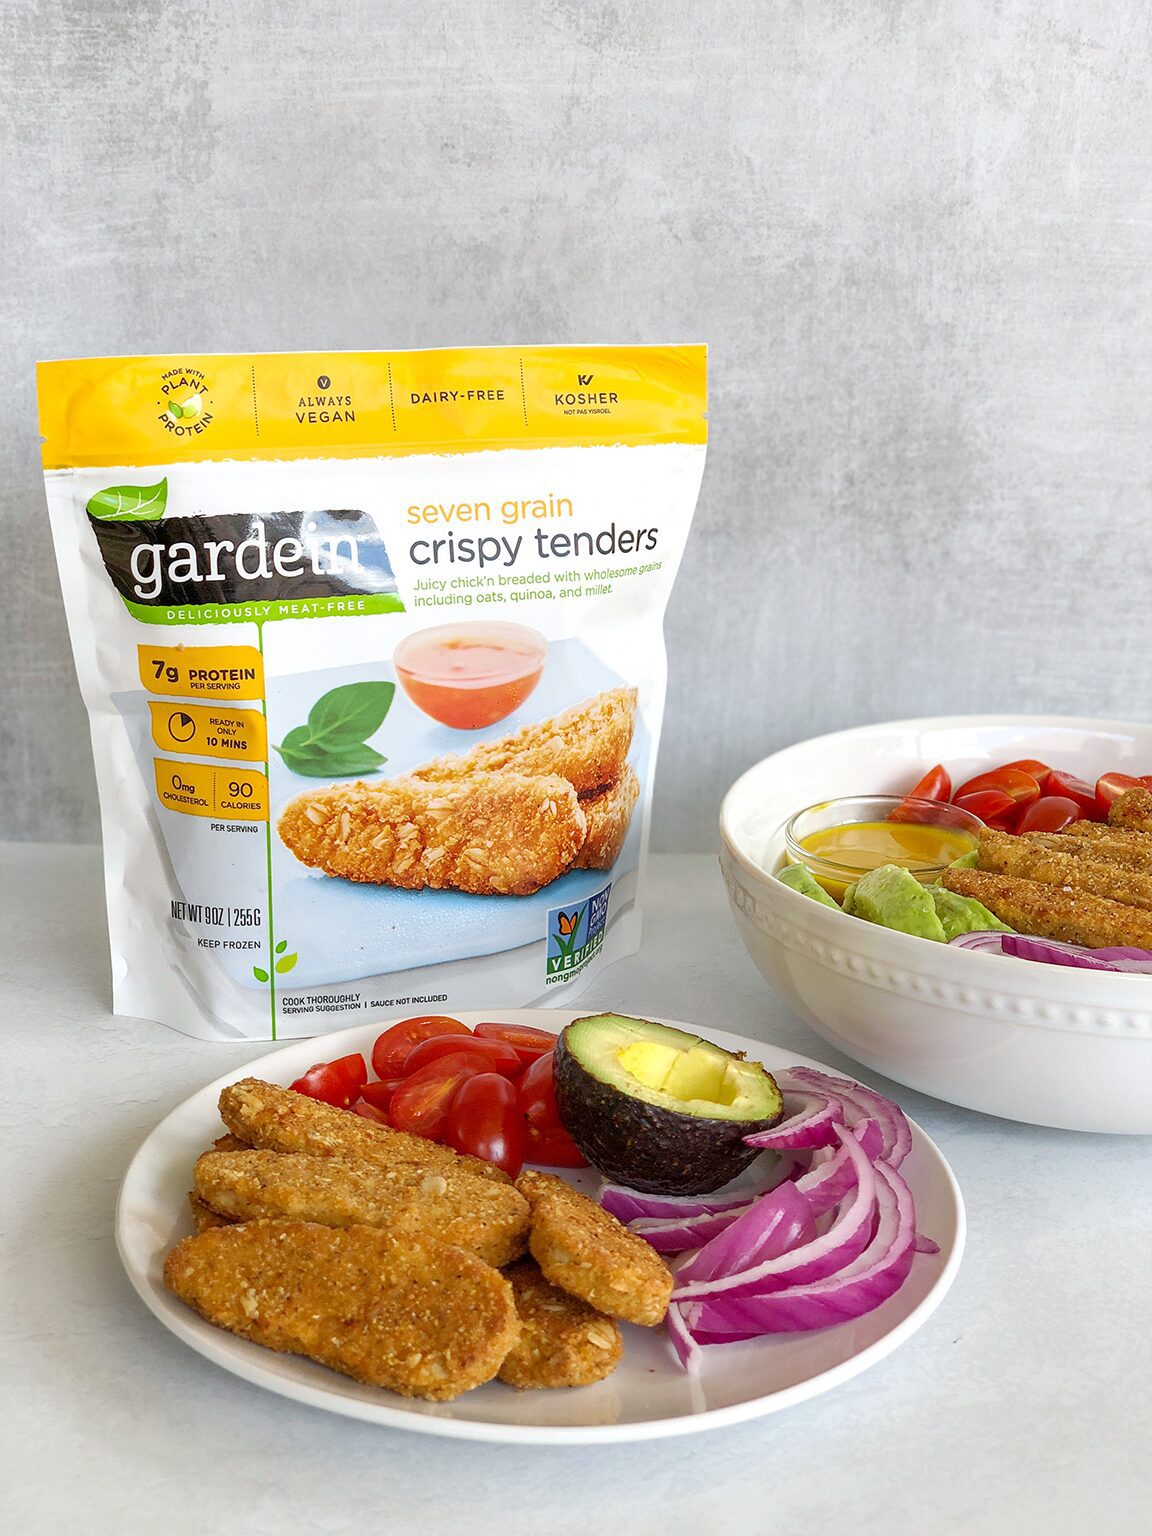 Vegan Honey Mustard Chicken Salad with Gardein